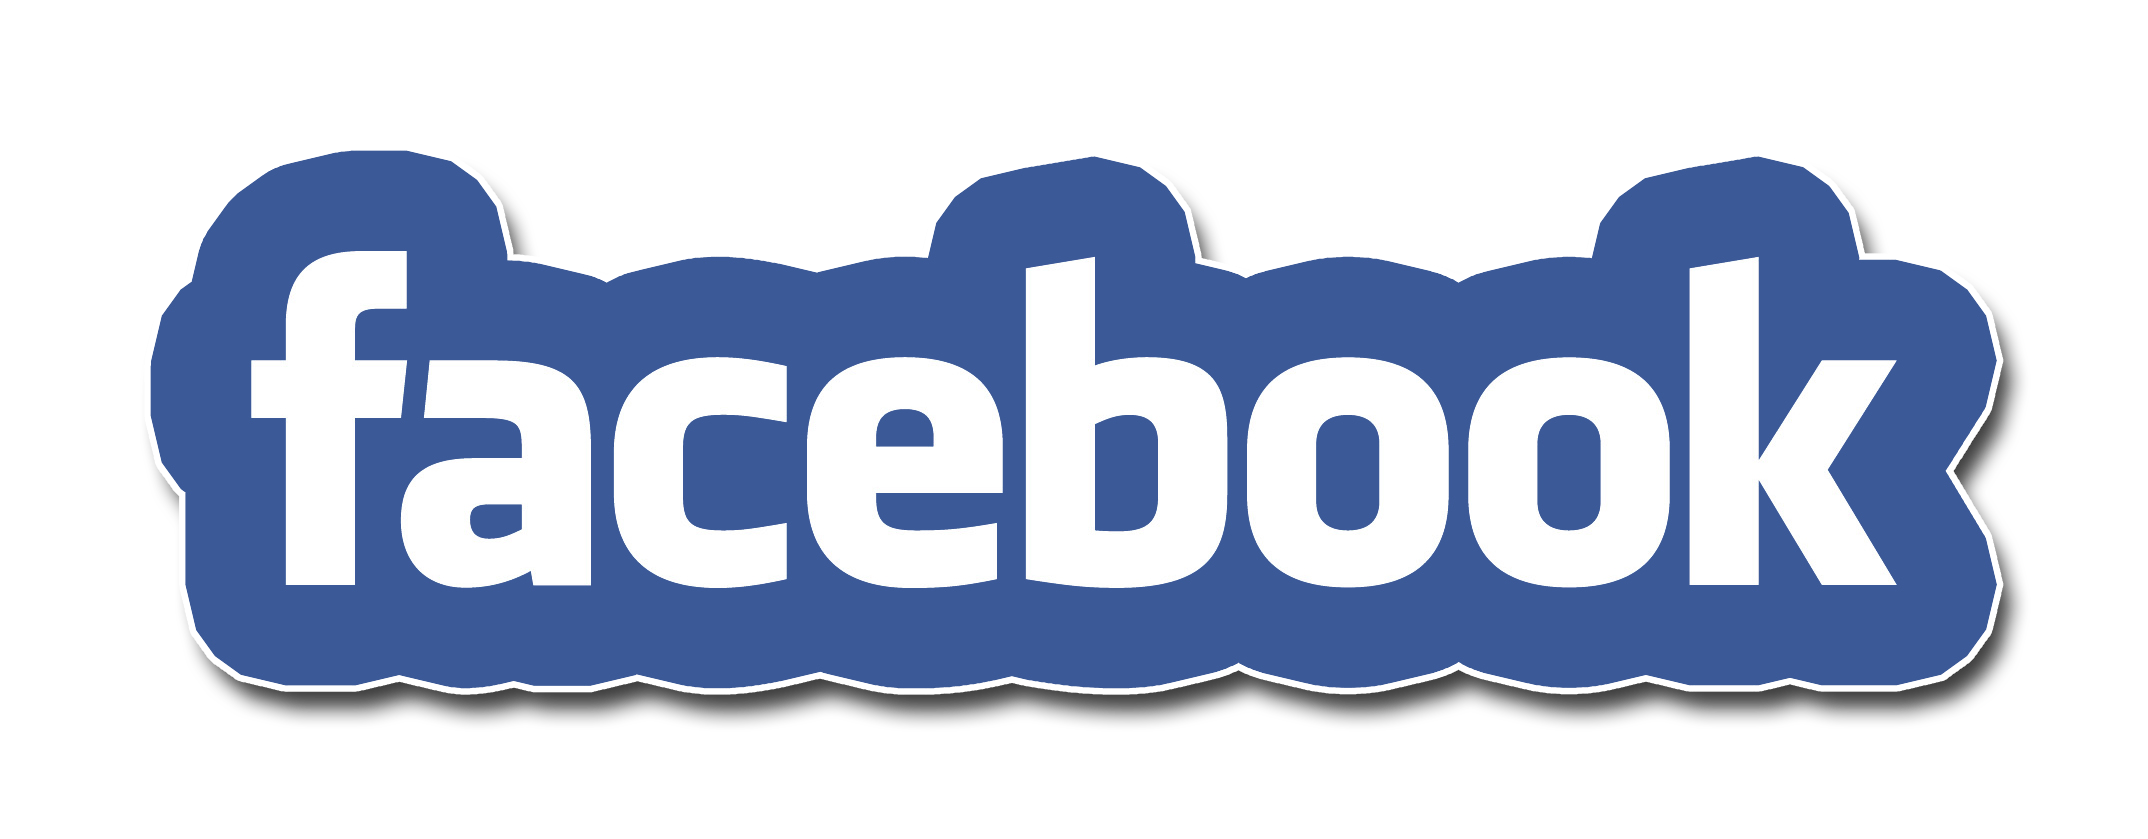 facebook text transparent logo